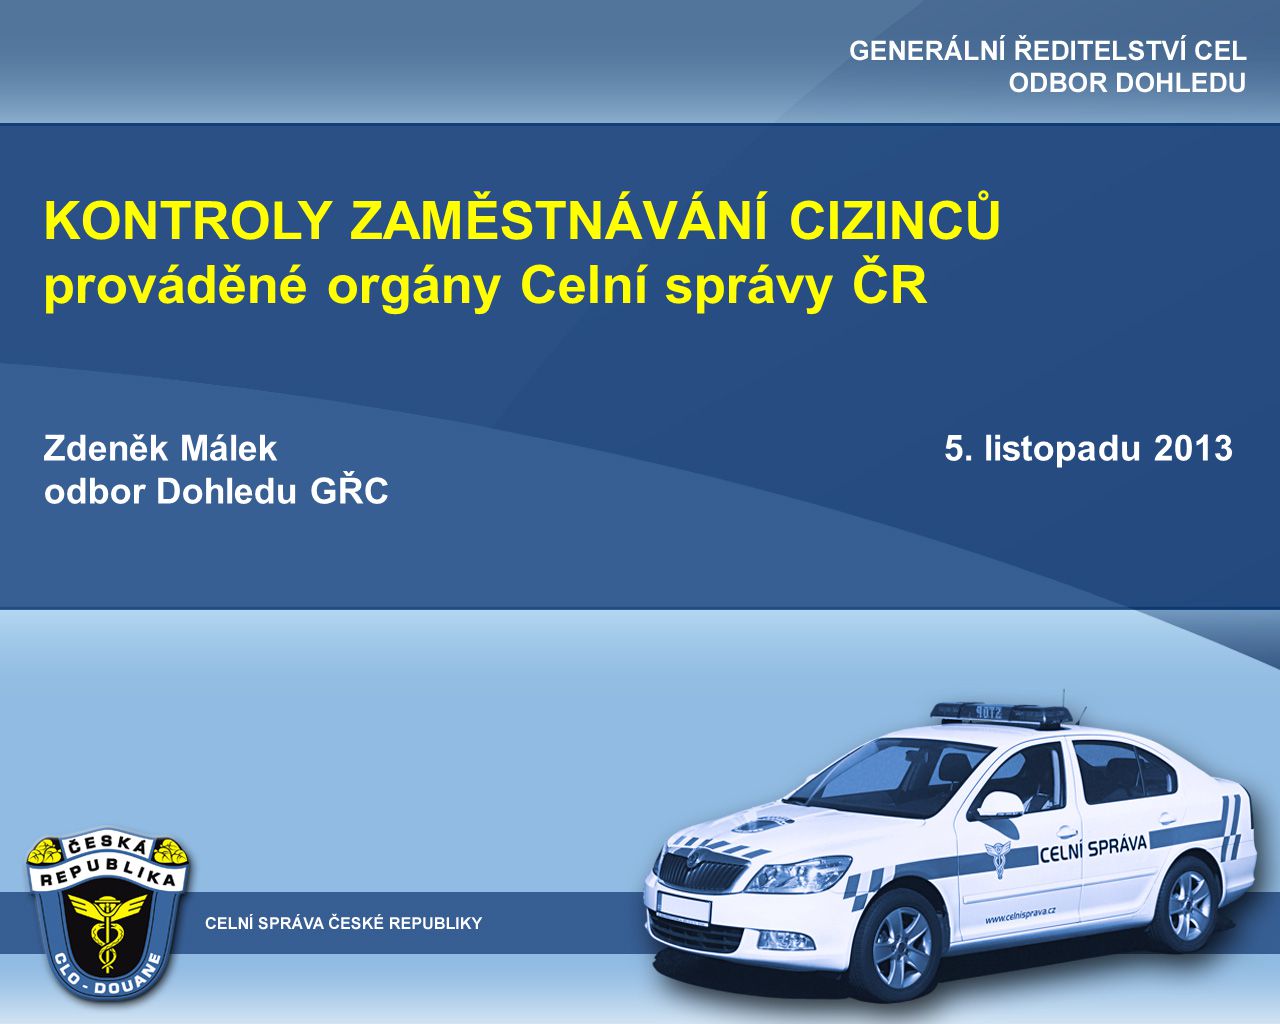 KONTROLY ZAMĚSTNÁVÁNÍ CIZINCŮ prováděné orgány Celní správy ČR